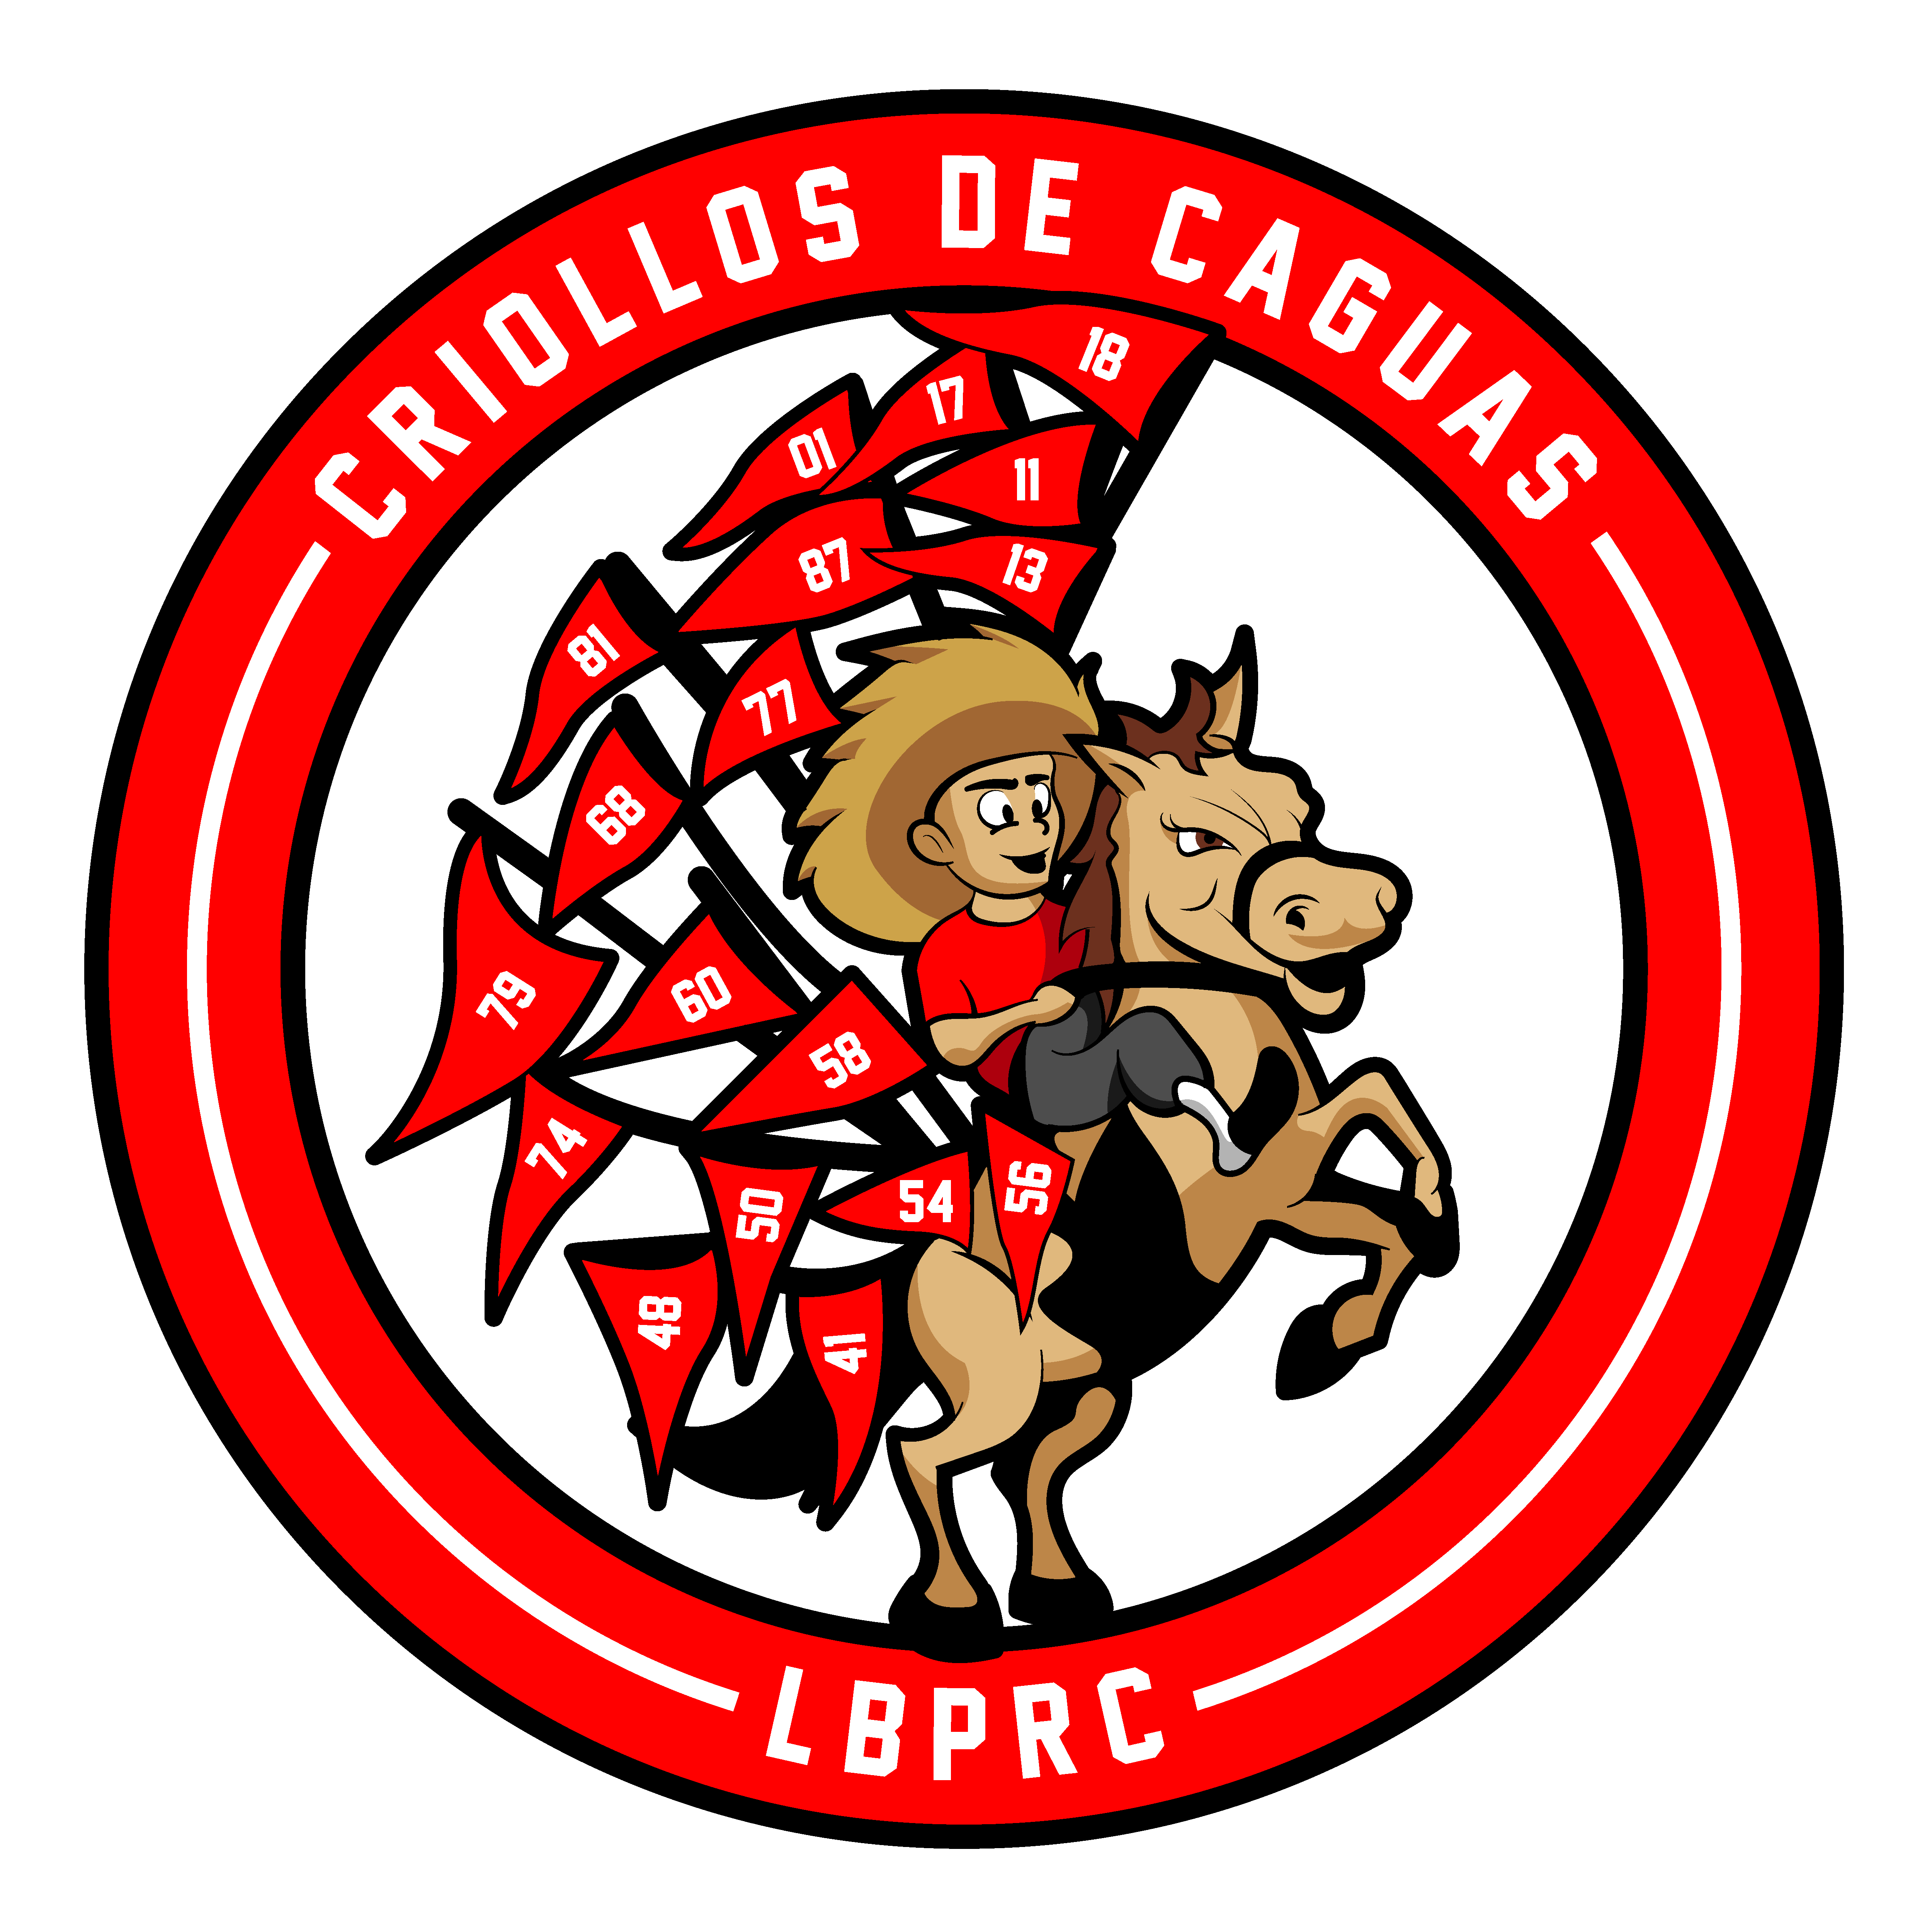 Criollos de Caguas shield